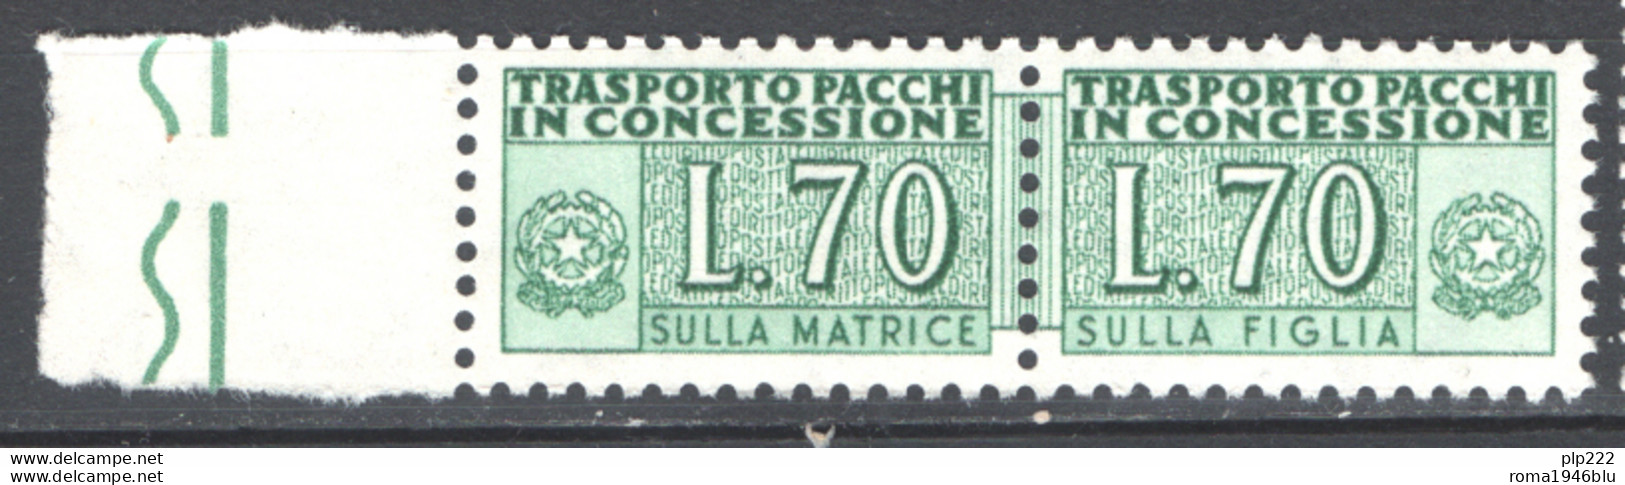 Italia Repubblica 1966 Pacchi In Concessione 70 Â£ Sass. PPC 8 **/MNH VF - Pacchi In Concessione